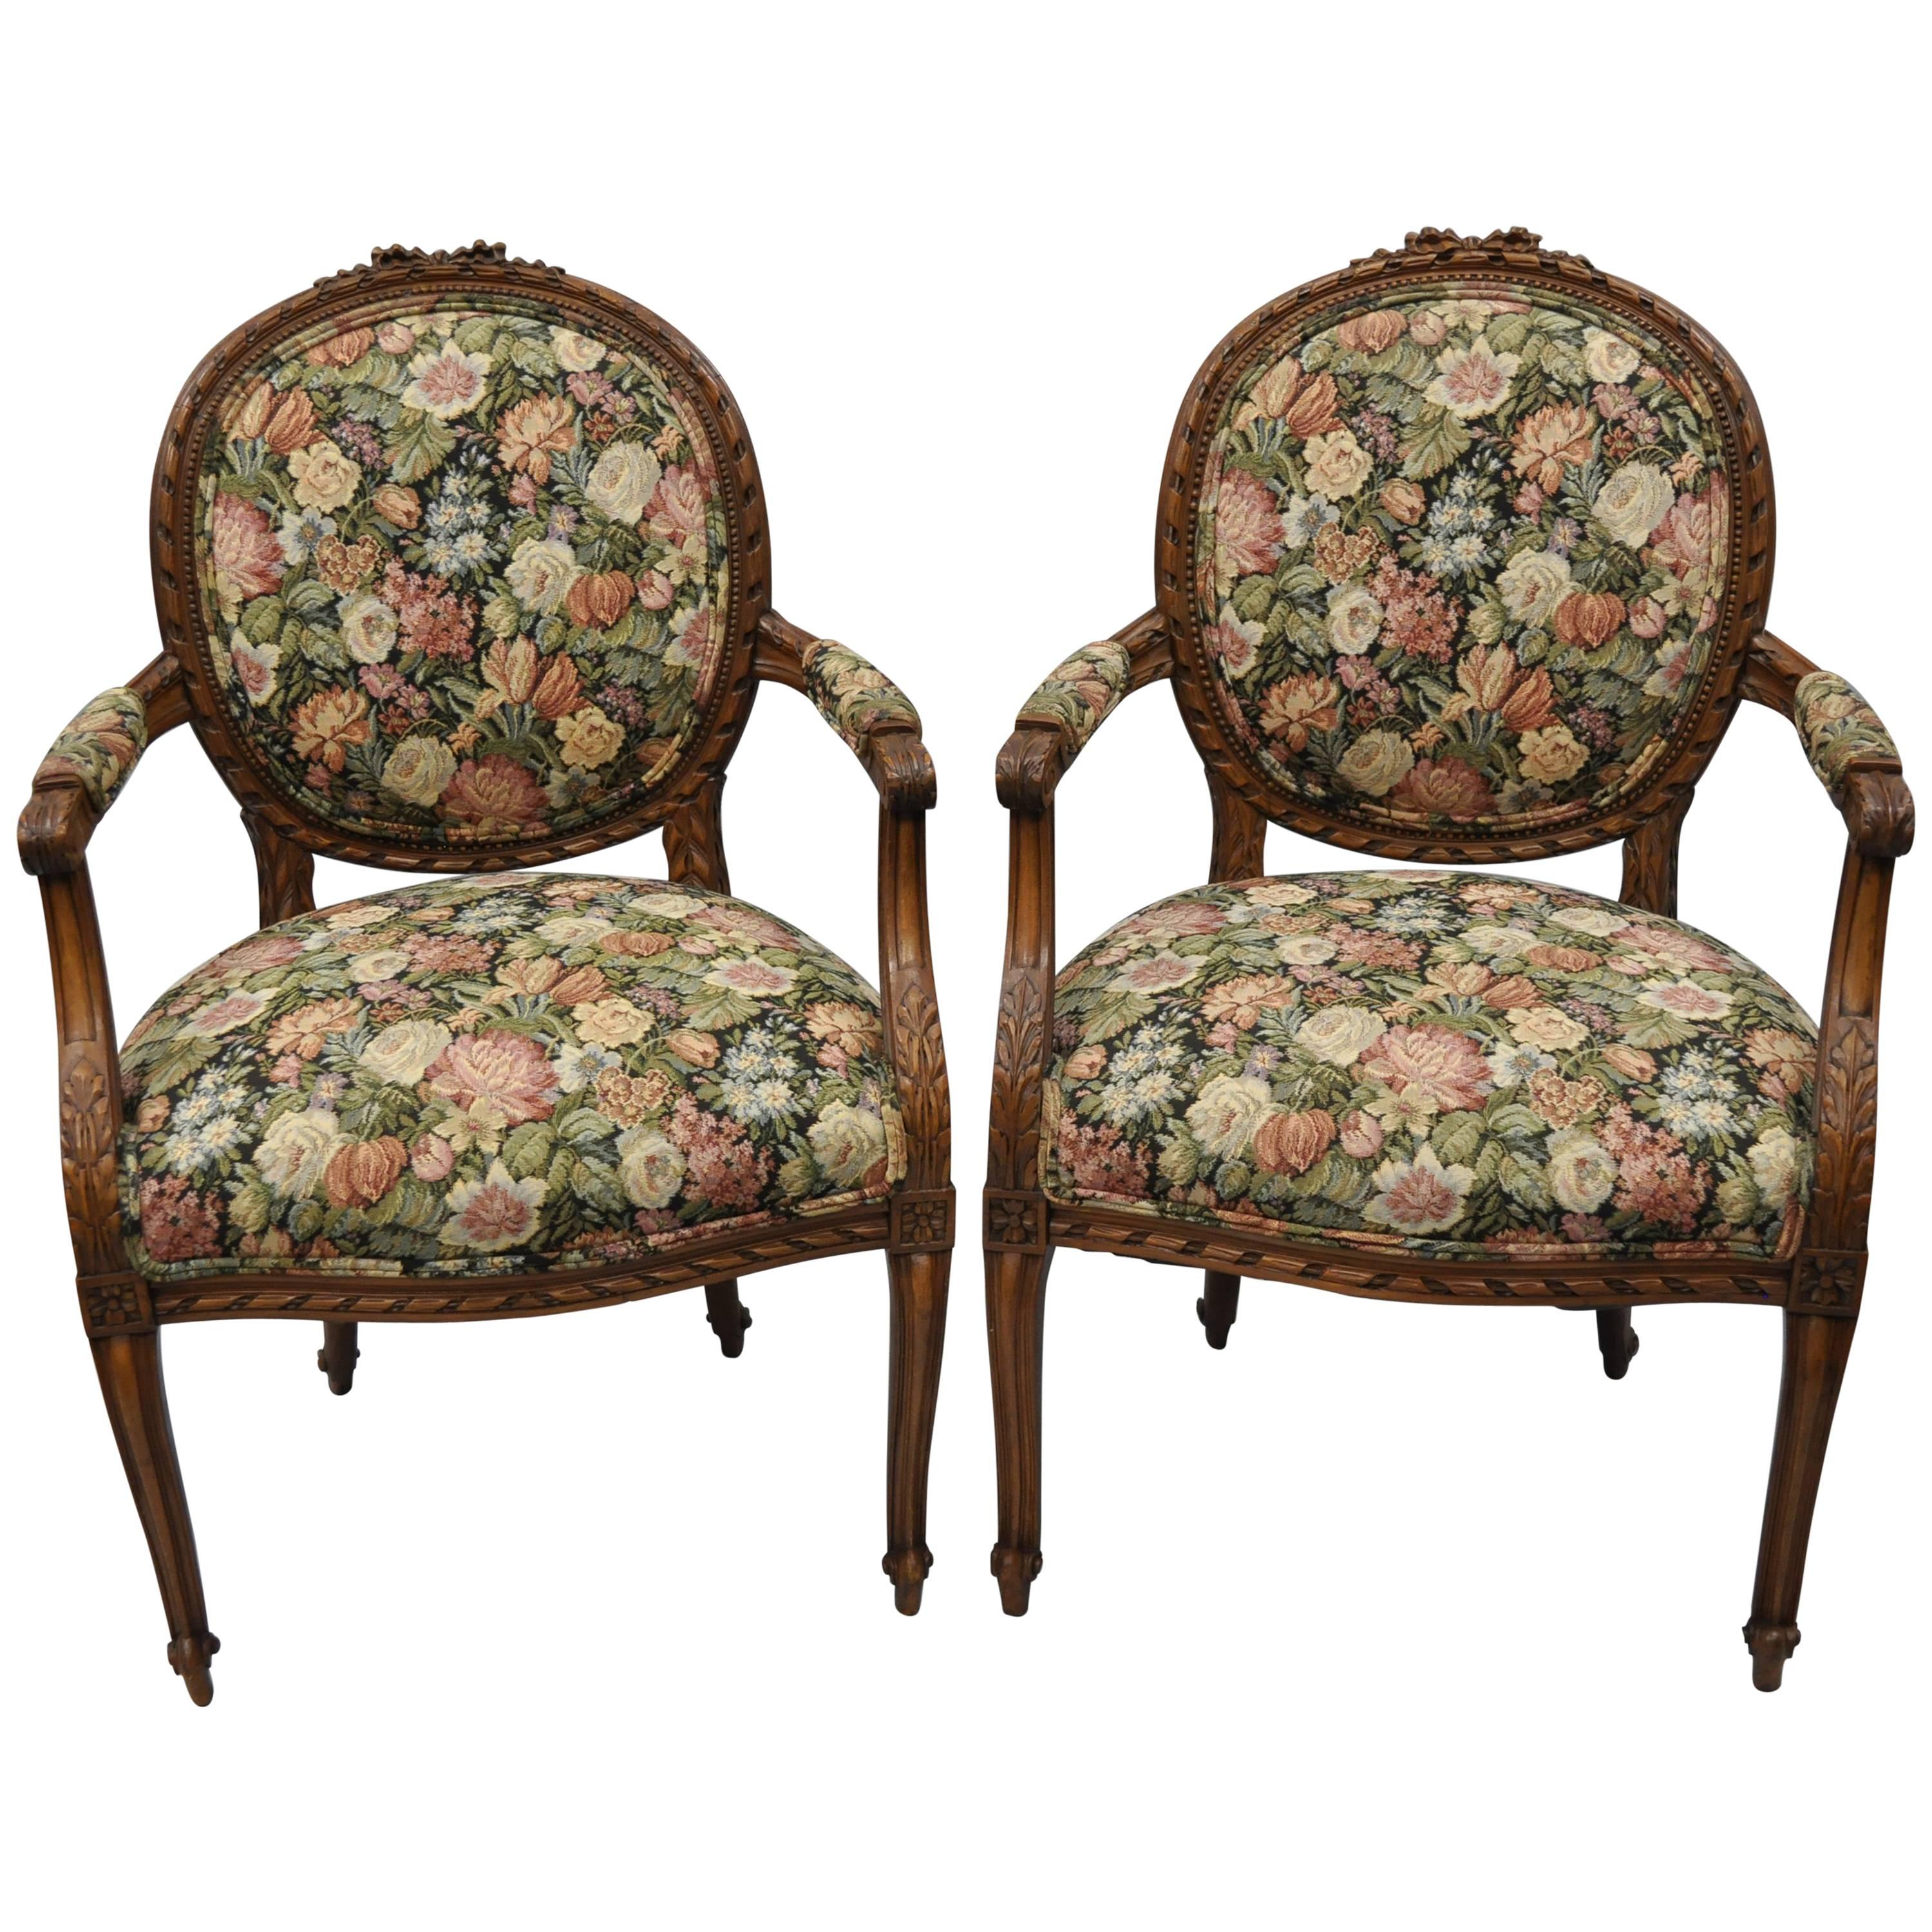 Paar Französisch Land Louis XV Stil fein geschnitzt Runde zurück Nussbaum Arm Stühle